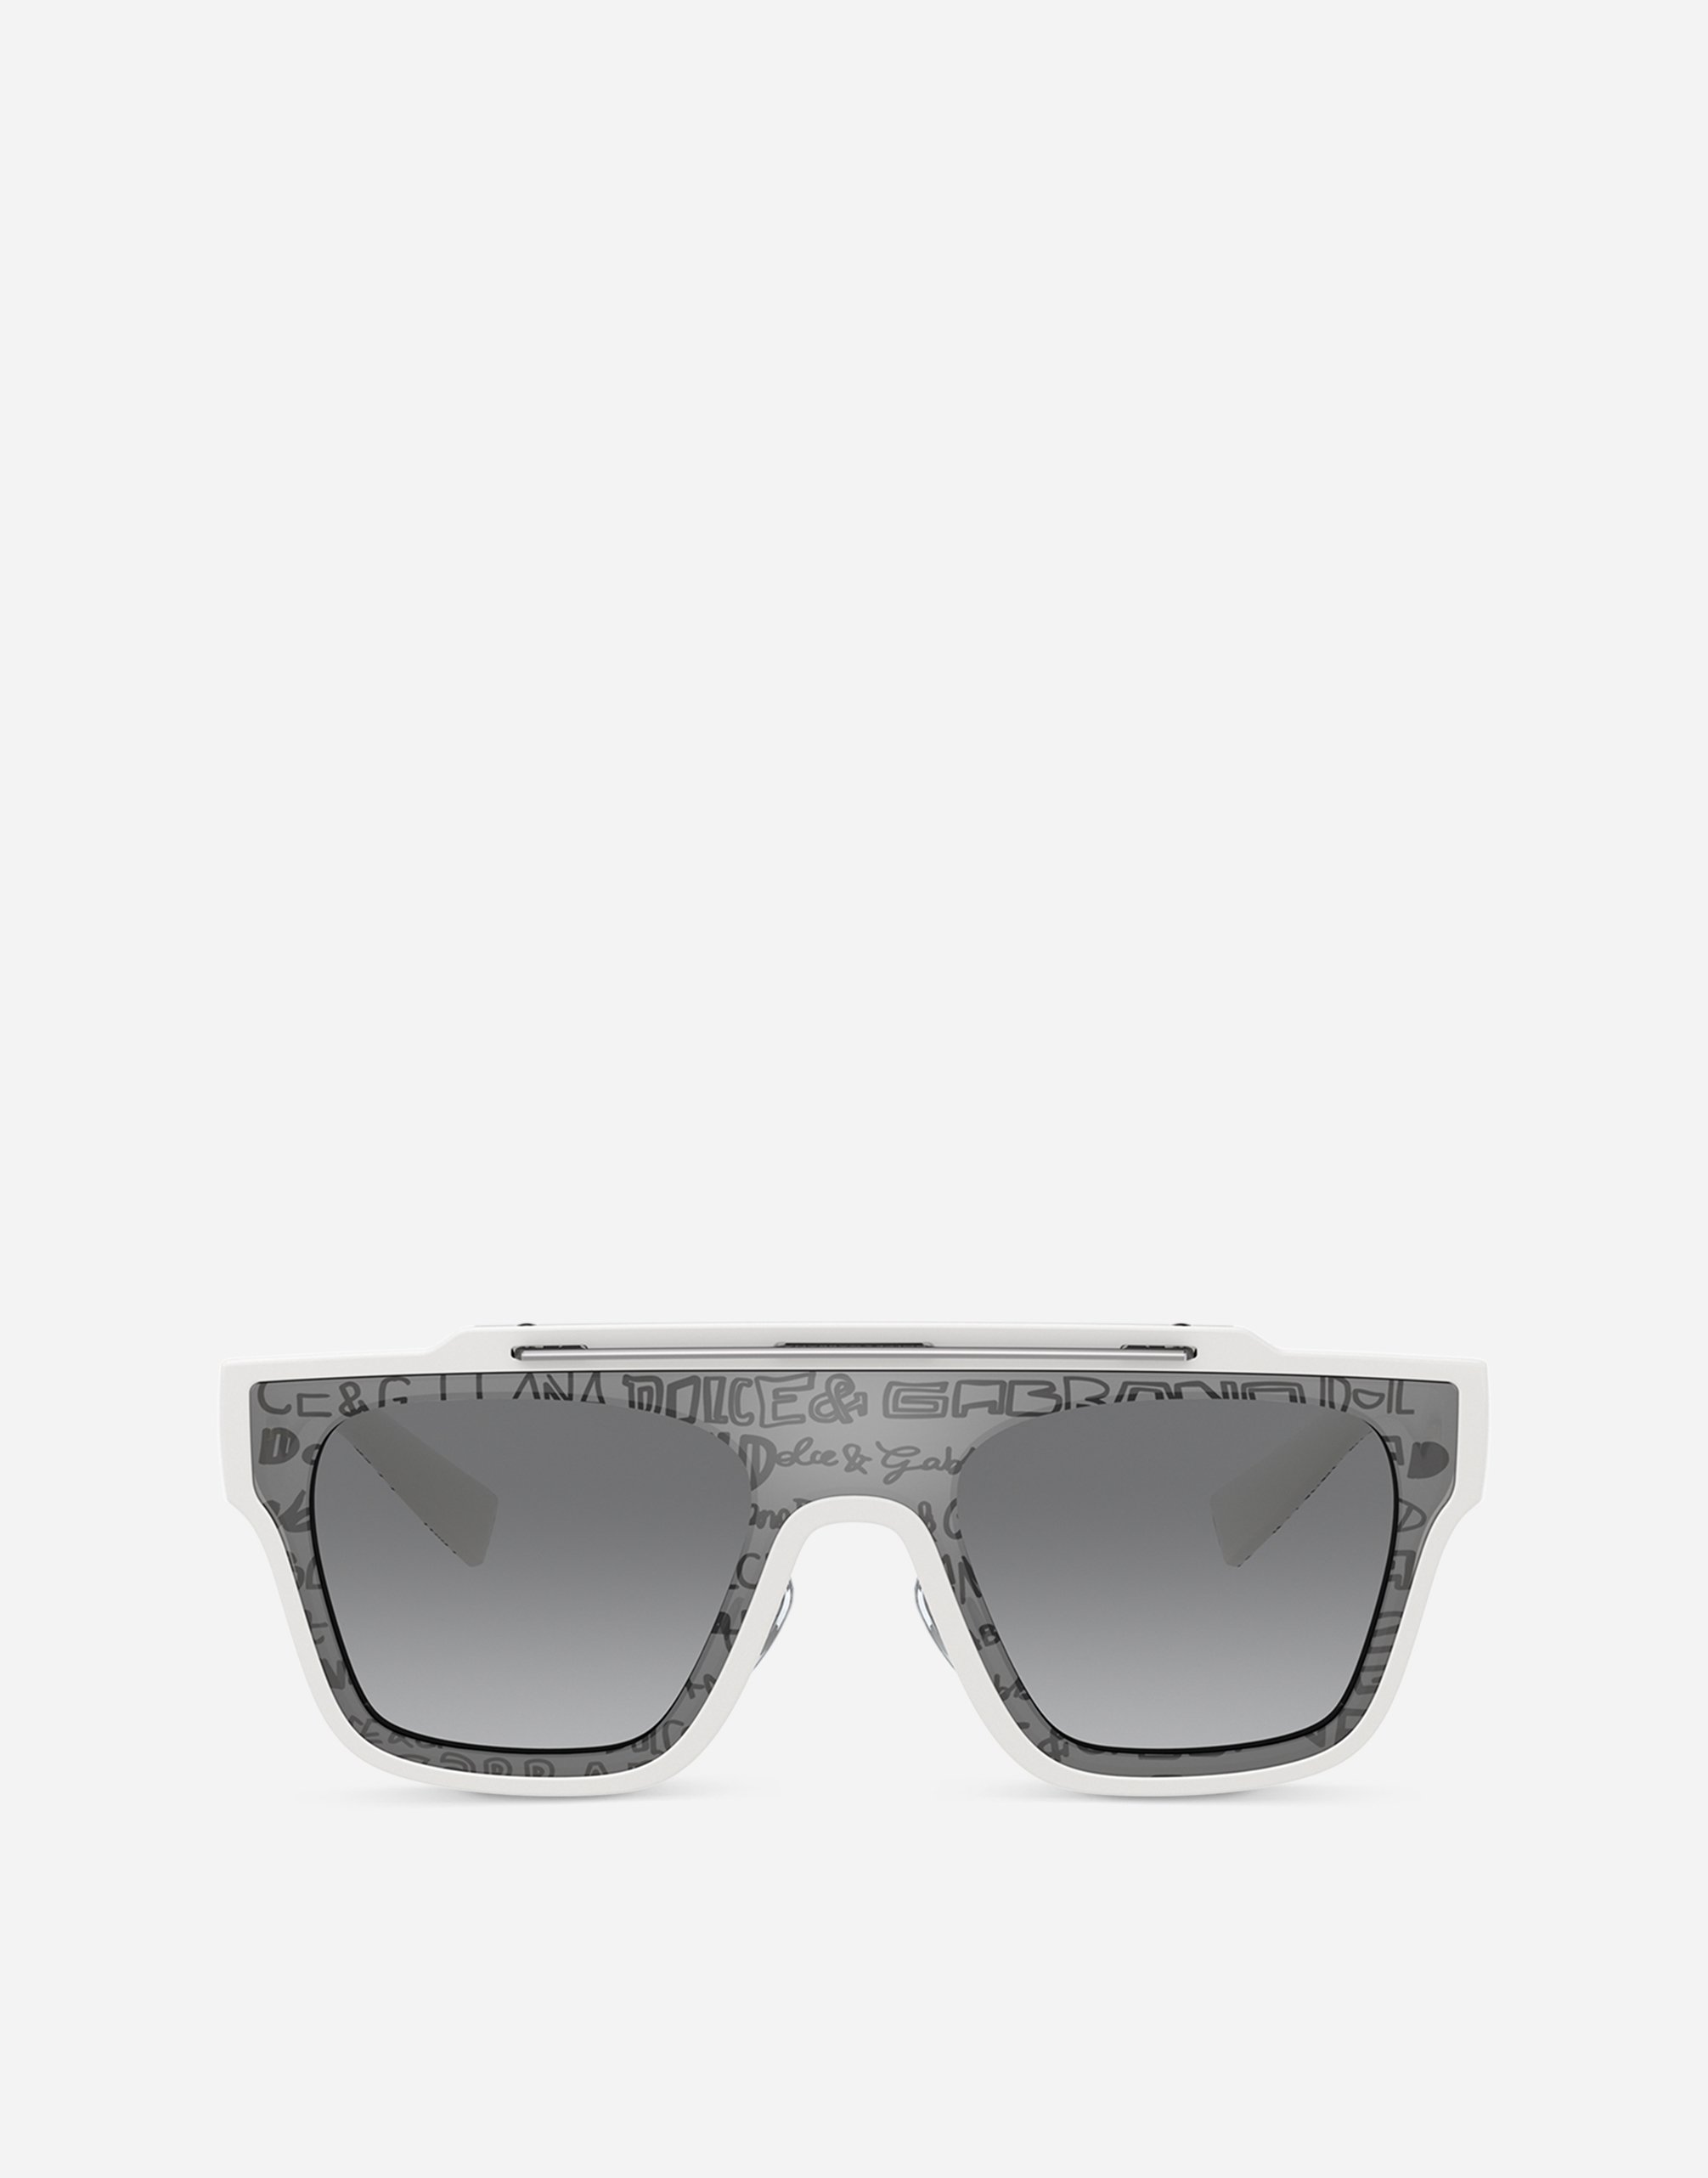 Dna Graffiti sunglasses in White and silver